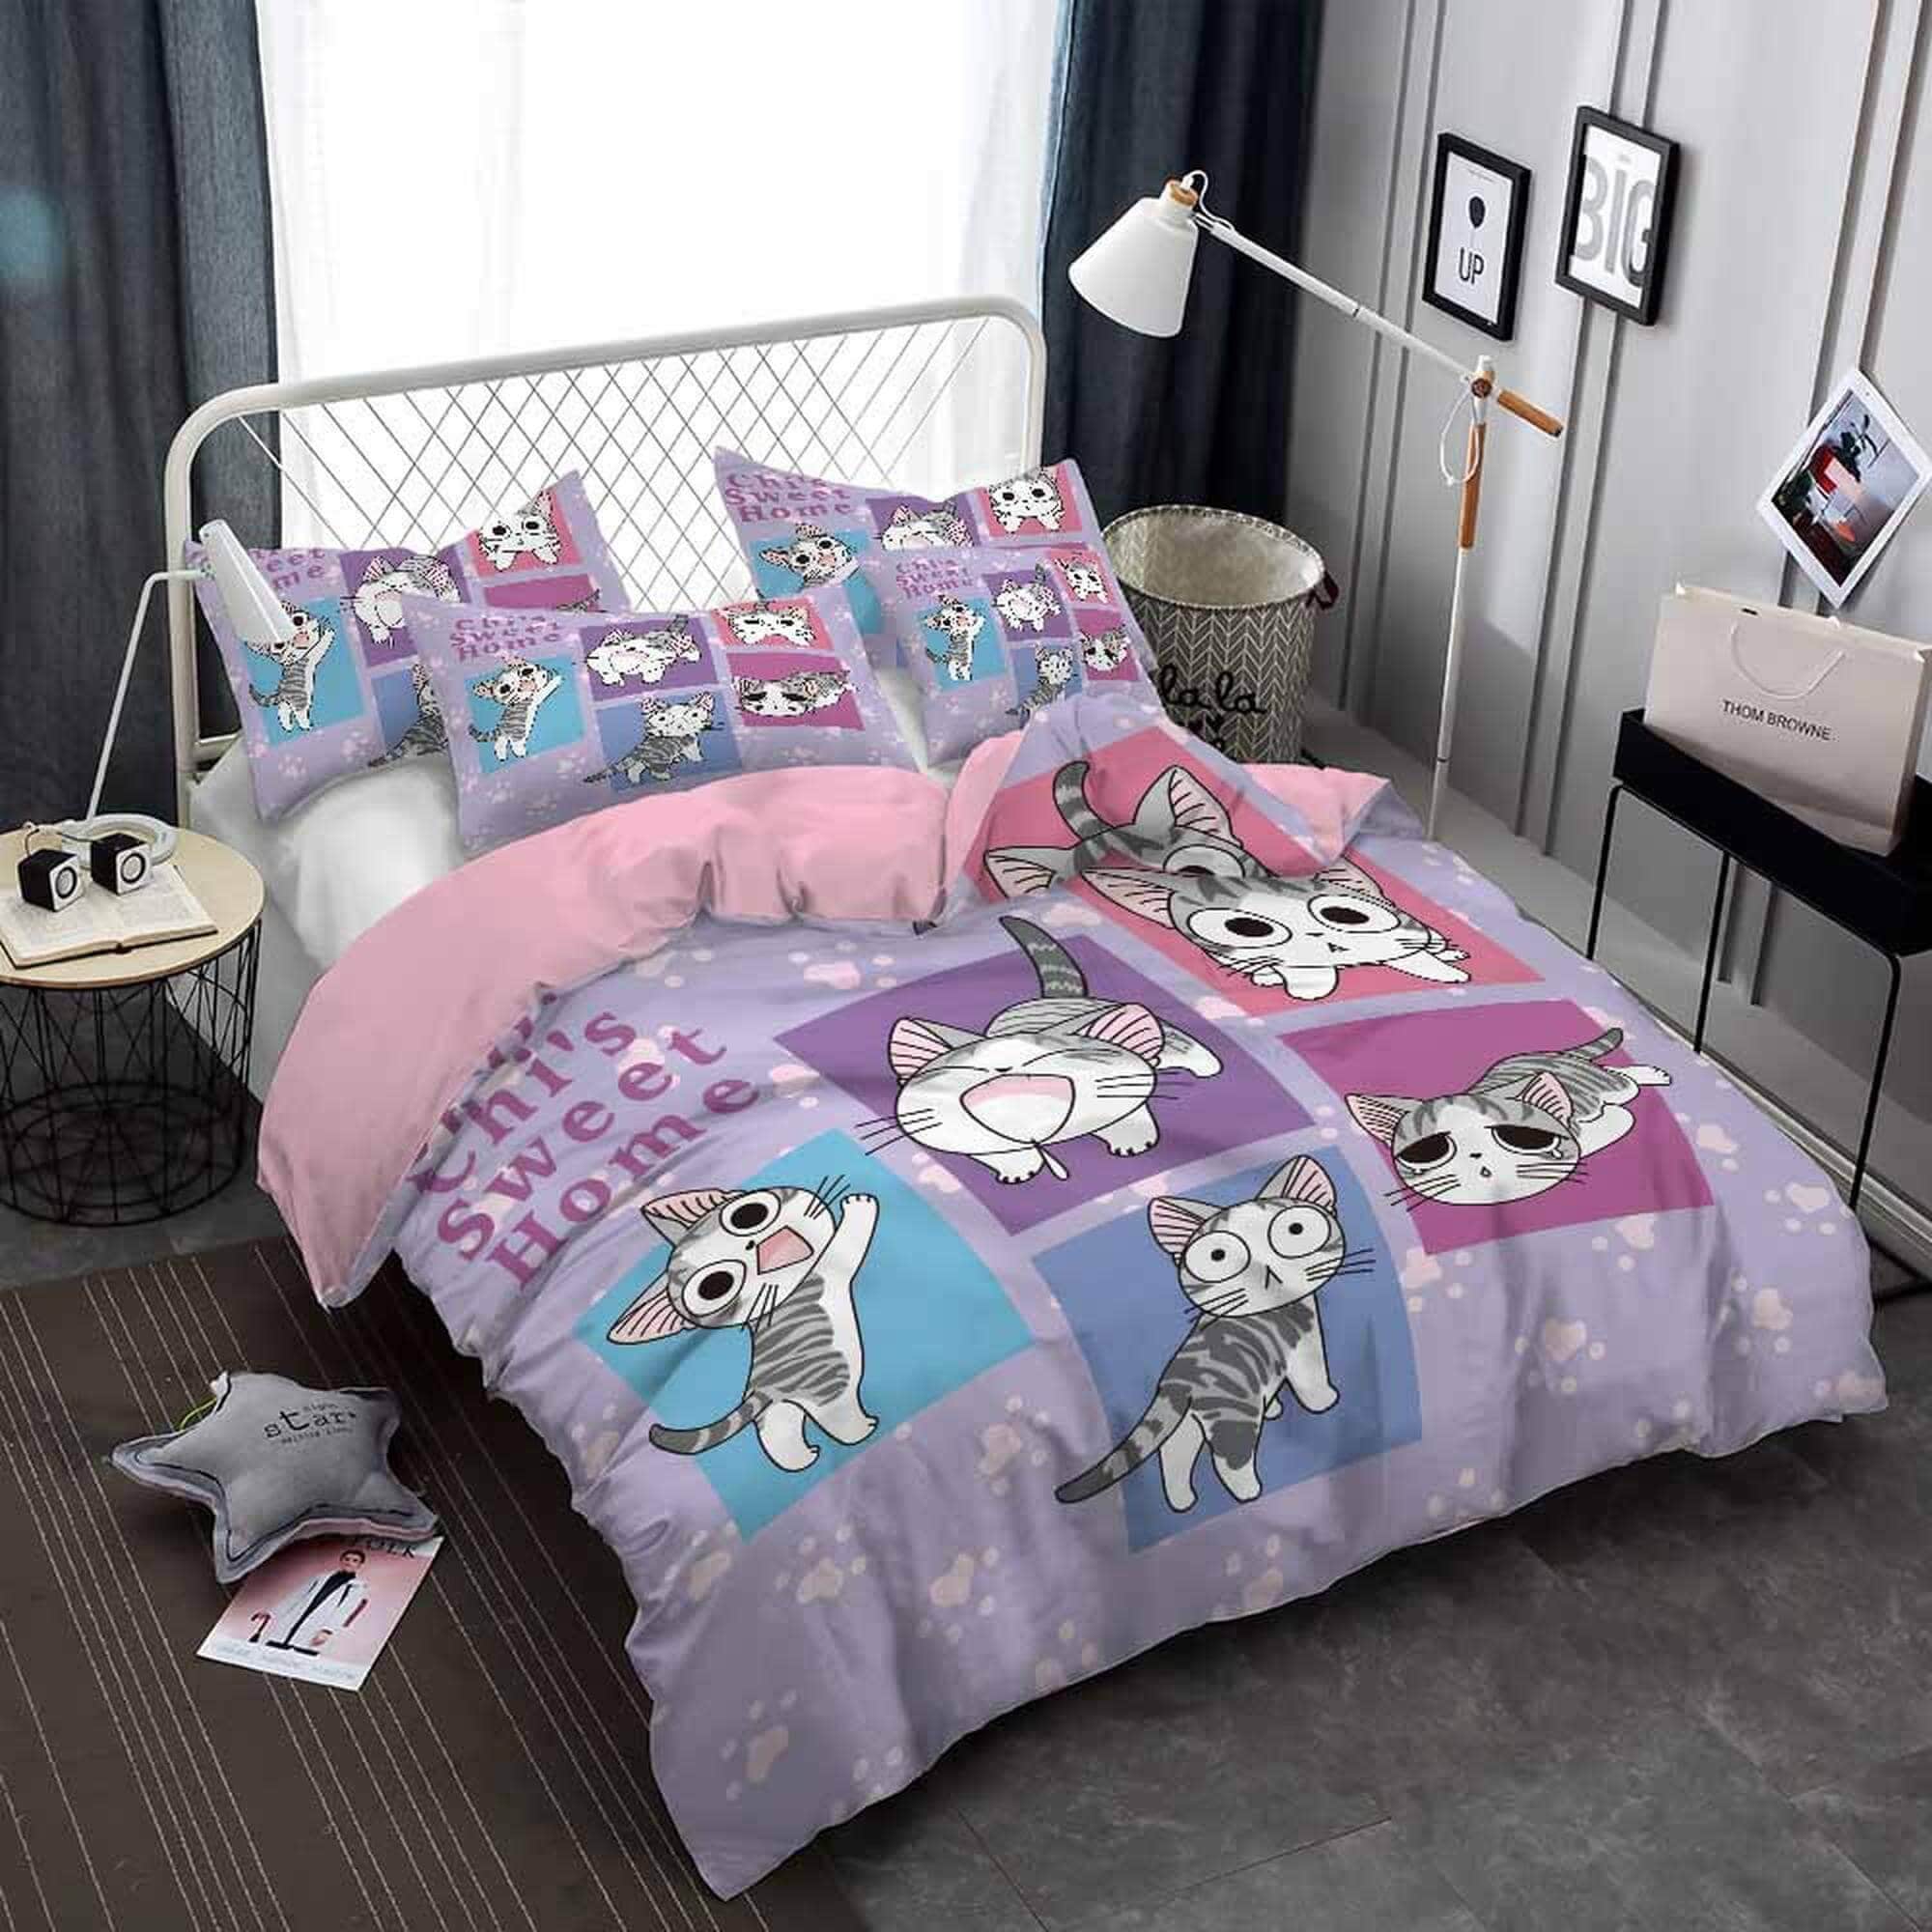 daintyduvet Funny cat bedding, toddler bedding, kids duvet cover set, gift for cat lovers, baby bedding, baby shower gift, purple bedding